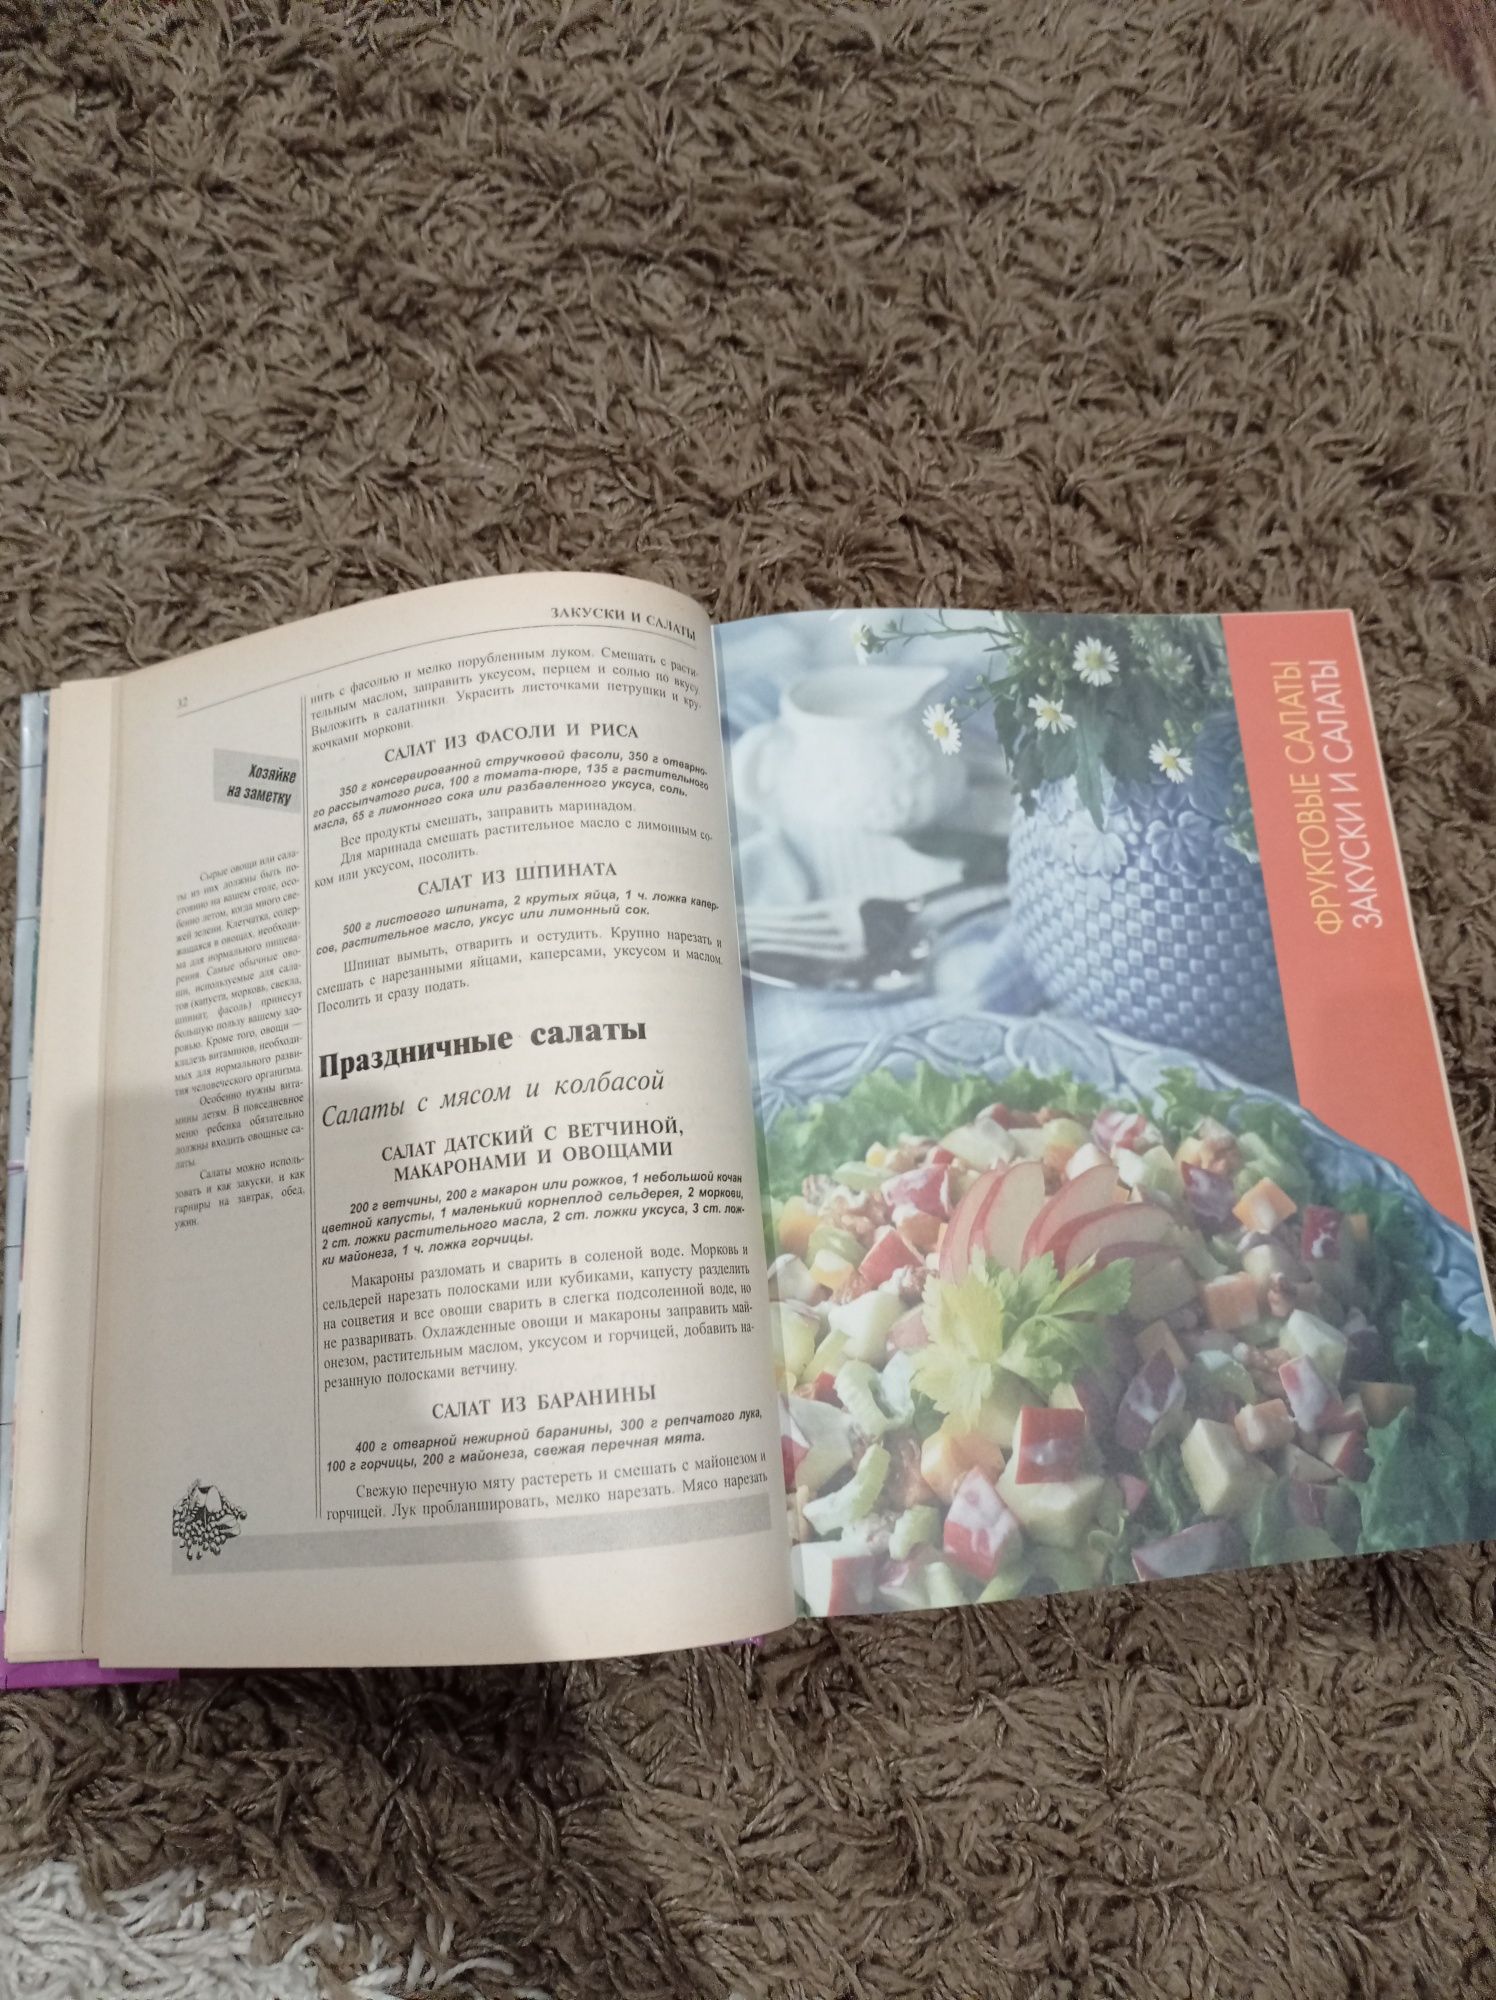 Большая кулинарная книга (800 стр.)